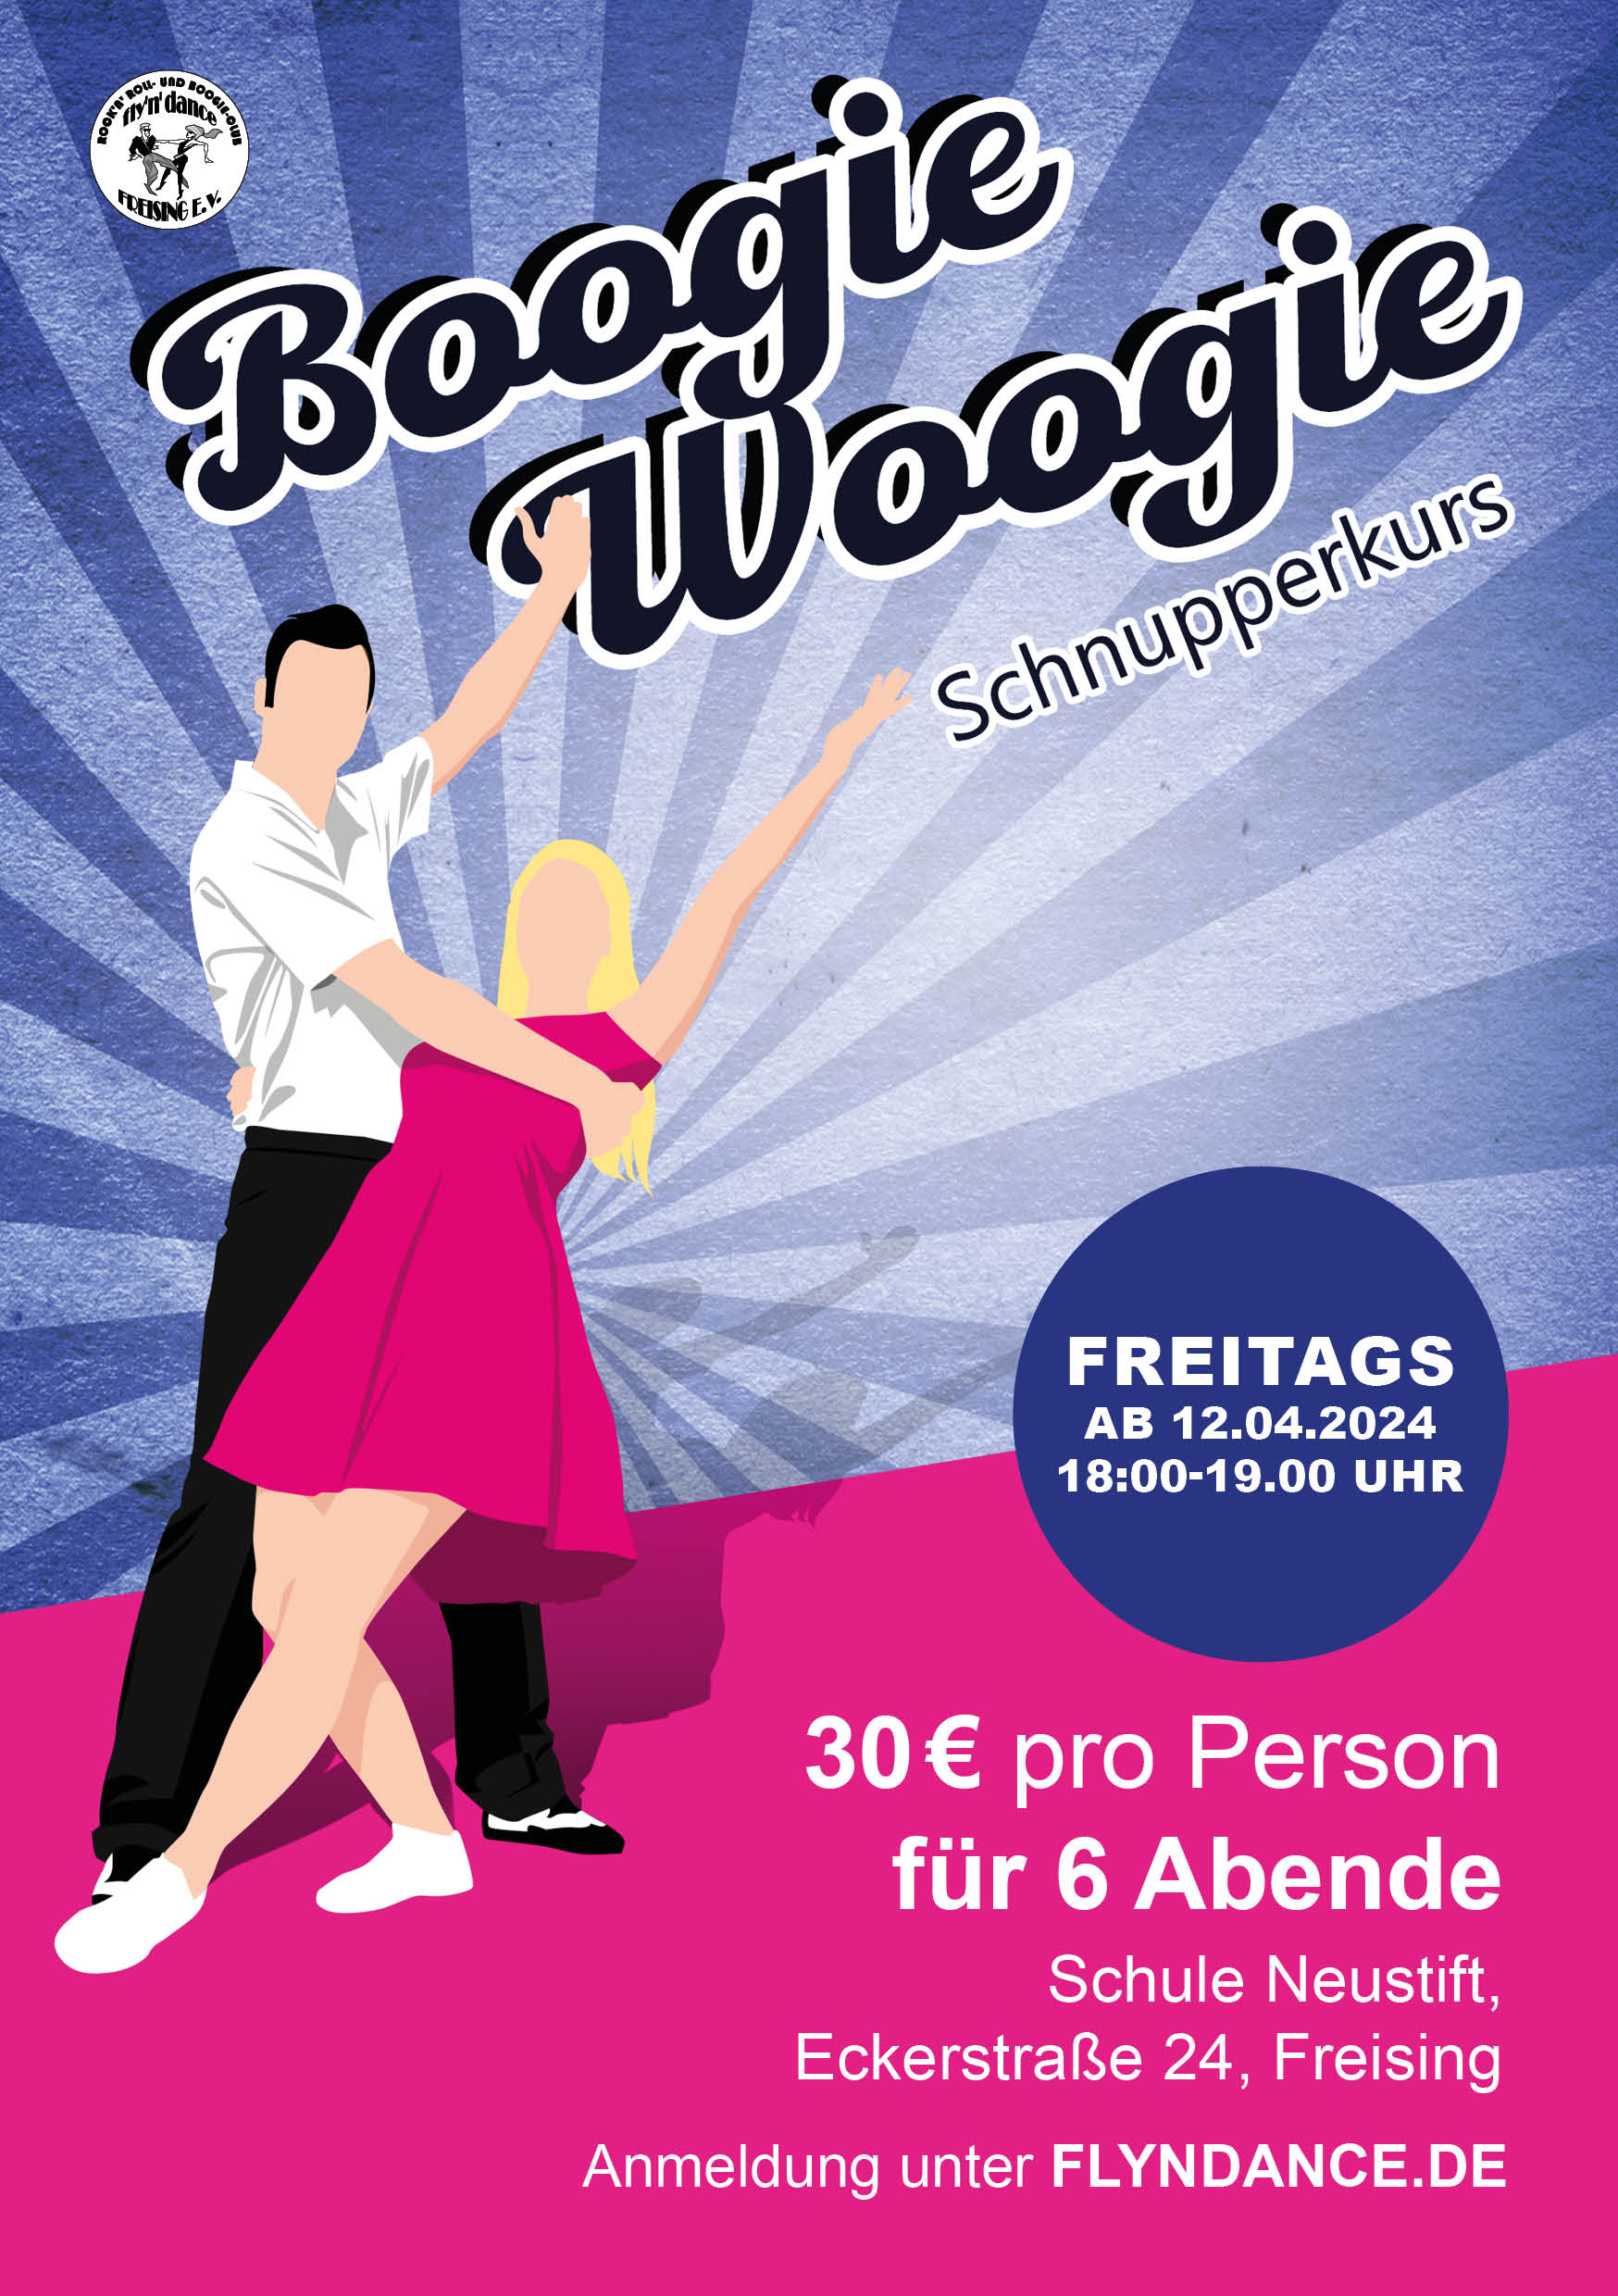 Der Schnupperkurs Boogie-Woogie umfasst sechs Abende ab 12.04. (bis einschließlich 17.05.) jeweils freitags von 18:00 bis 19:00 Uhr in der Turnhalle der Sternschule Neustift, Eckerstraße 24 in Freising. Die Gebühr beträgt 30€ pro Person, die Bezahlung erfolgt am ersten Abend vor Ort.